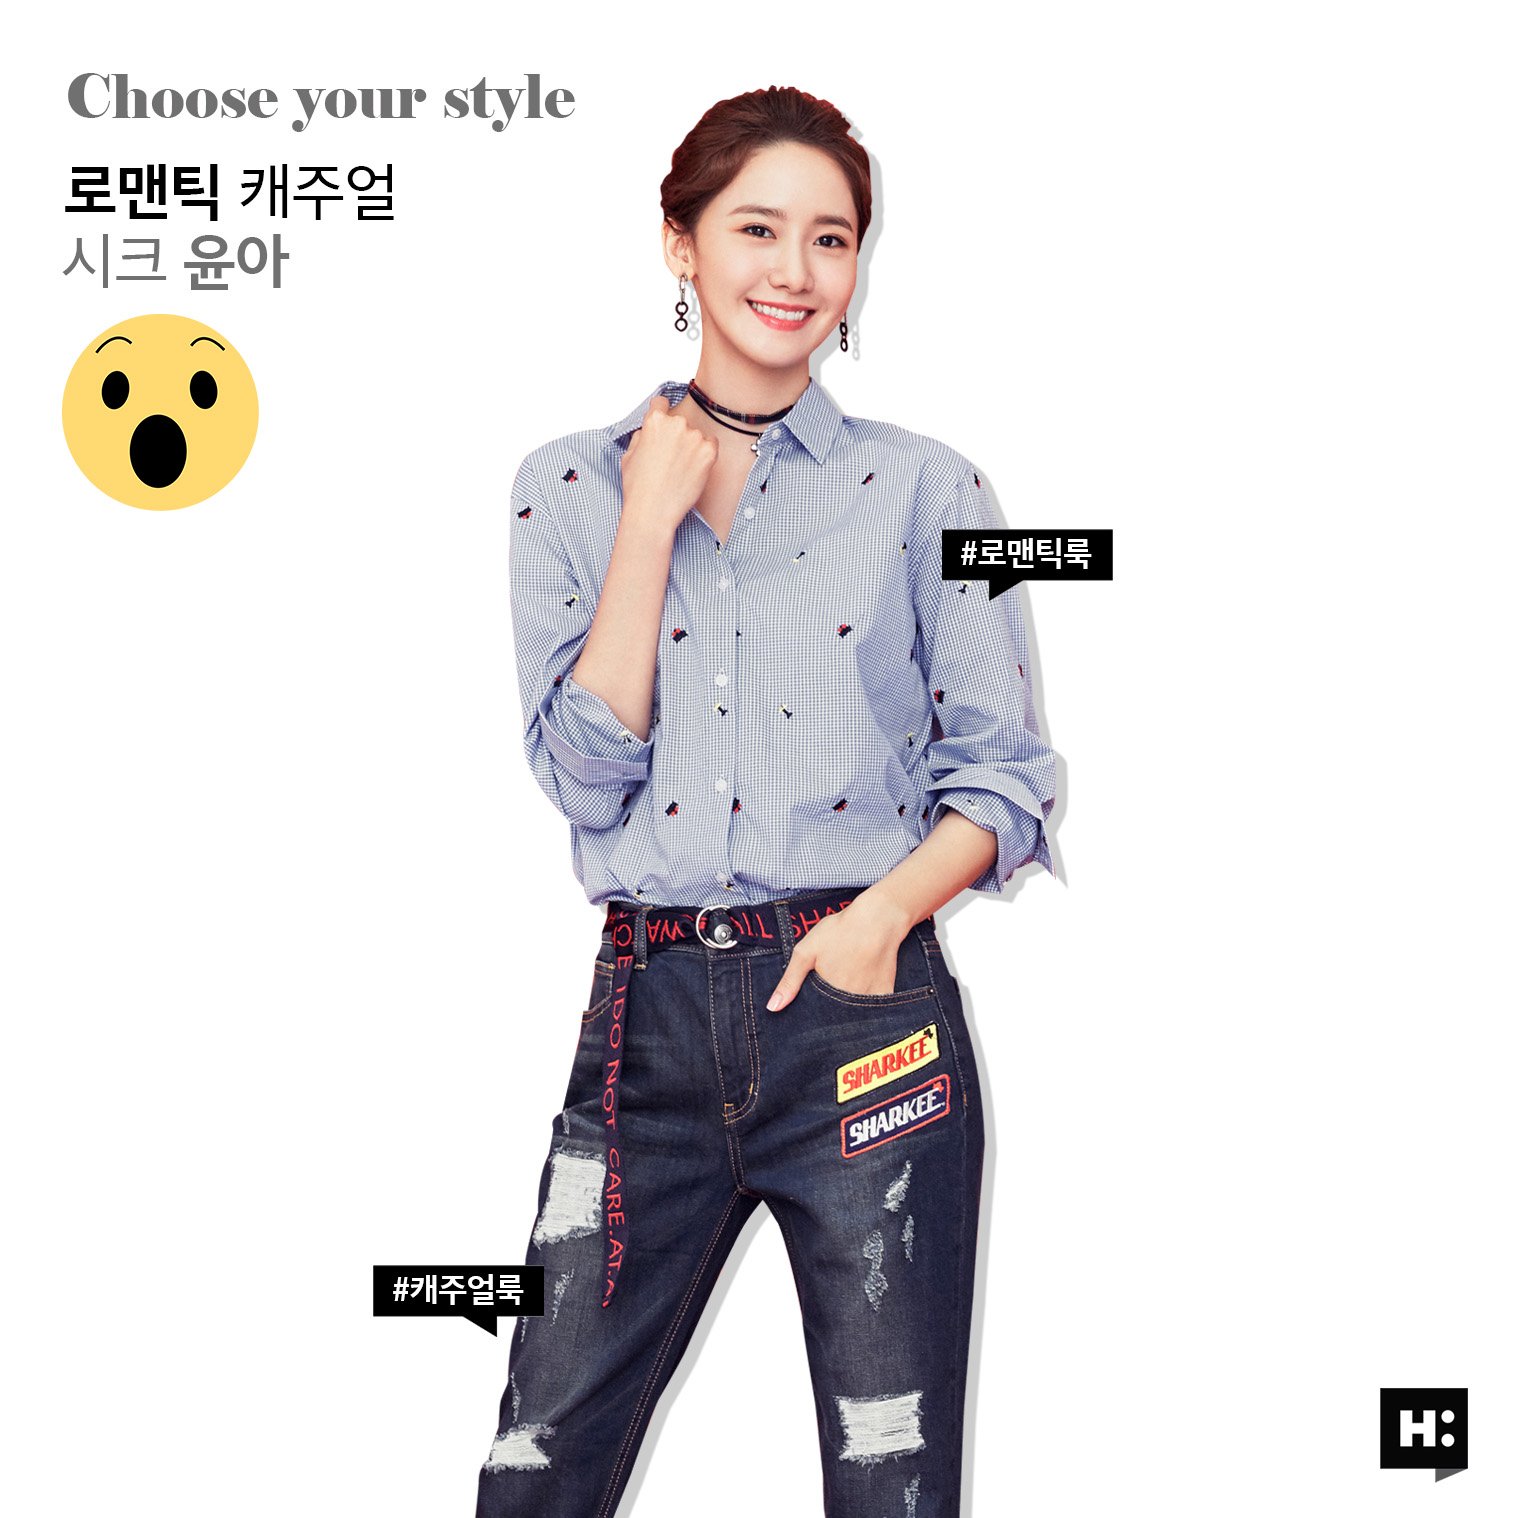 [OTHER][27-07-2015]YoonA trở thành người mẫu mới cho dòng thời trang "H:CONNECT" - Page 7 PdSB7N3a08-3000x3000